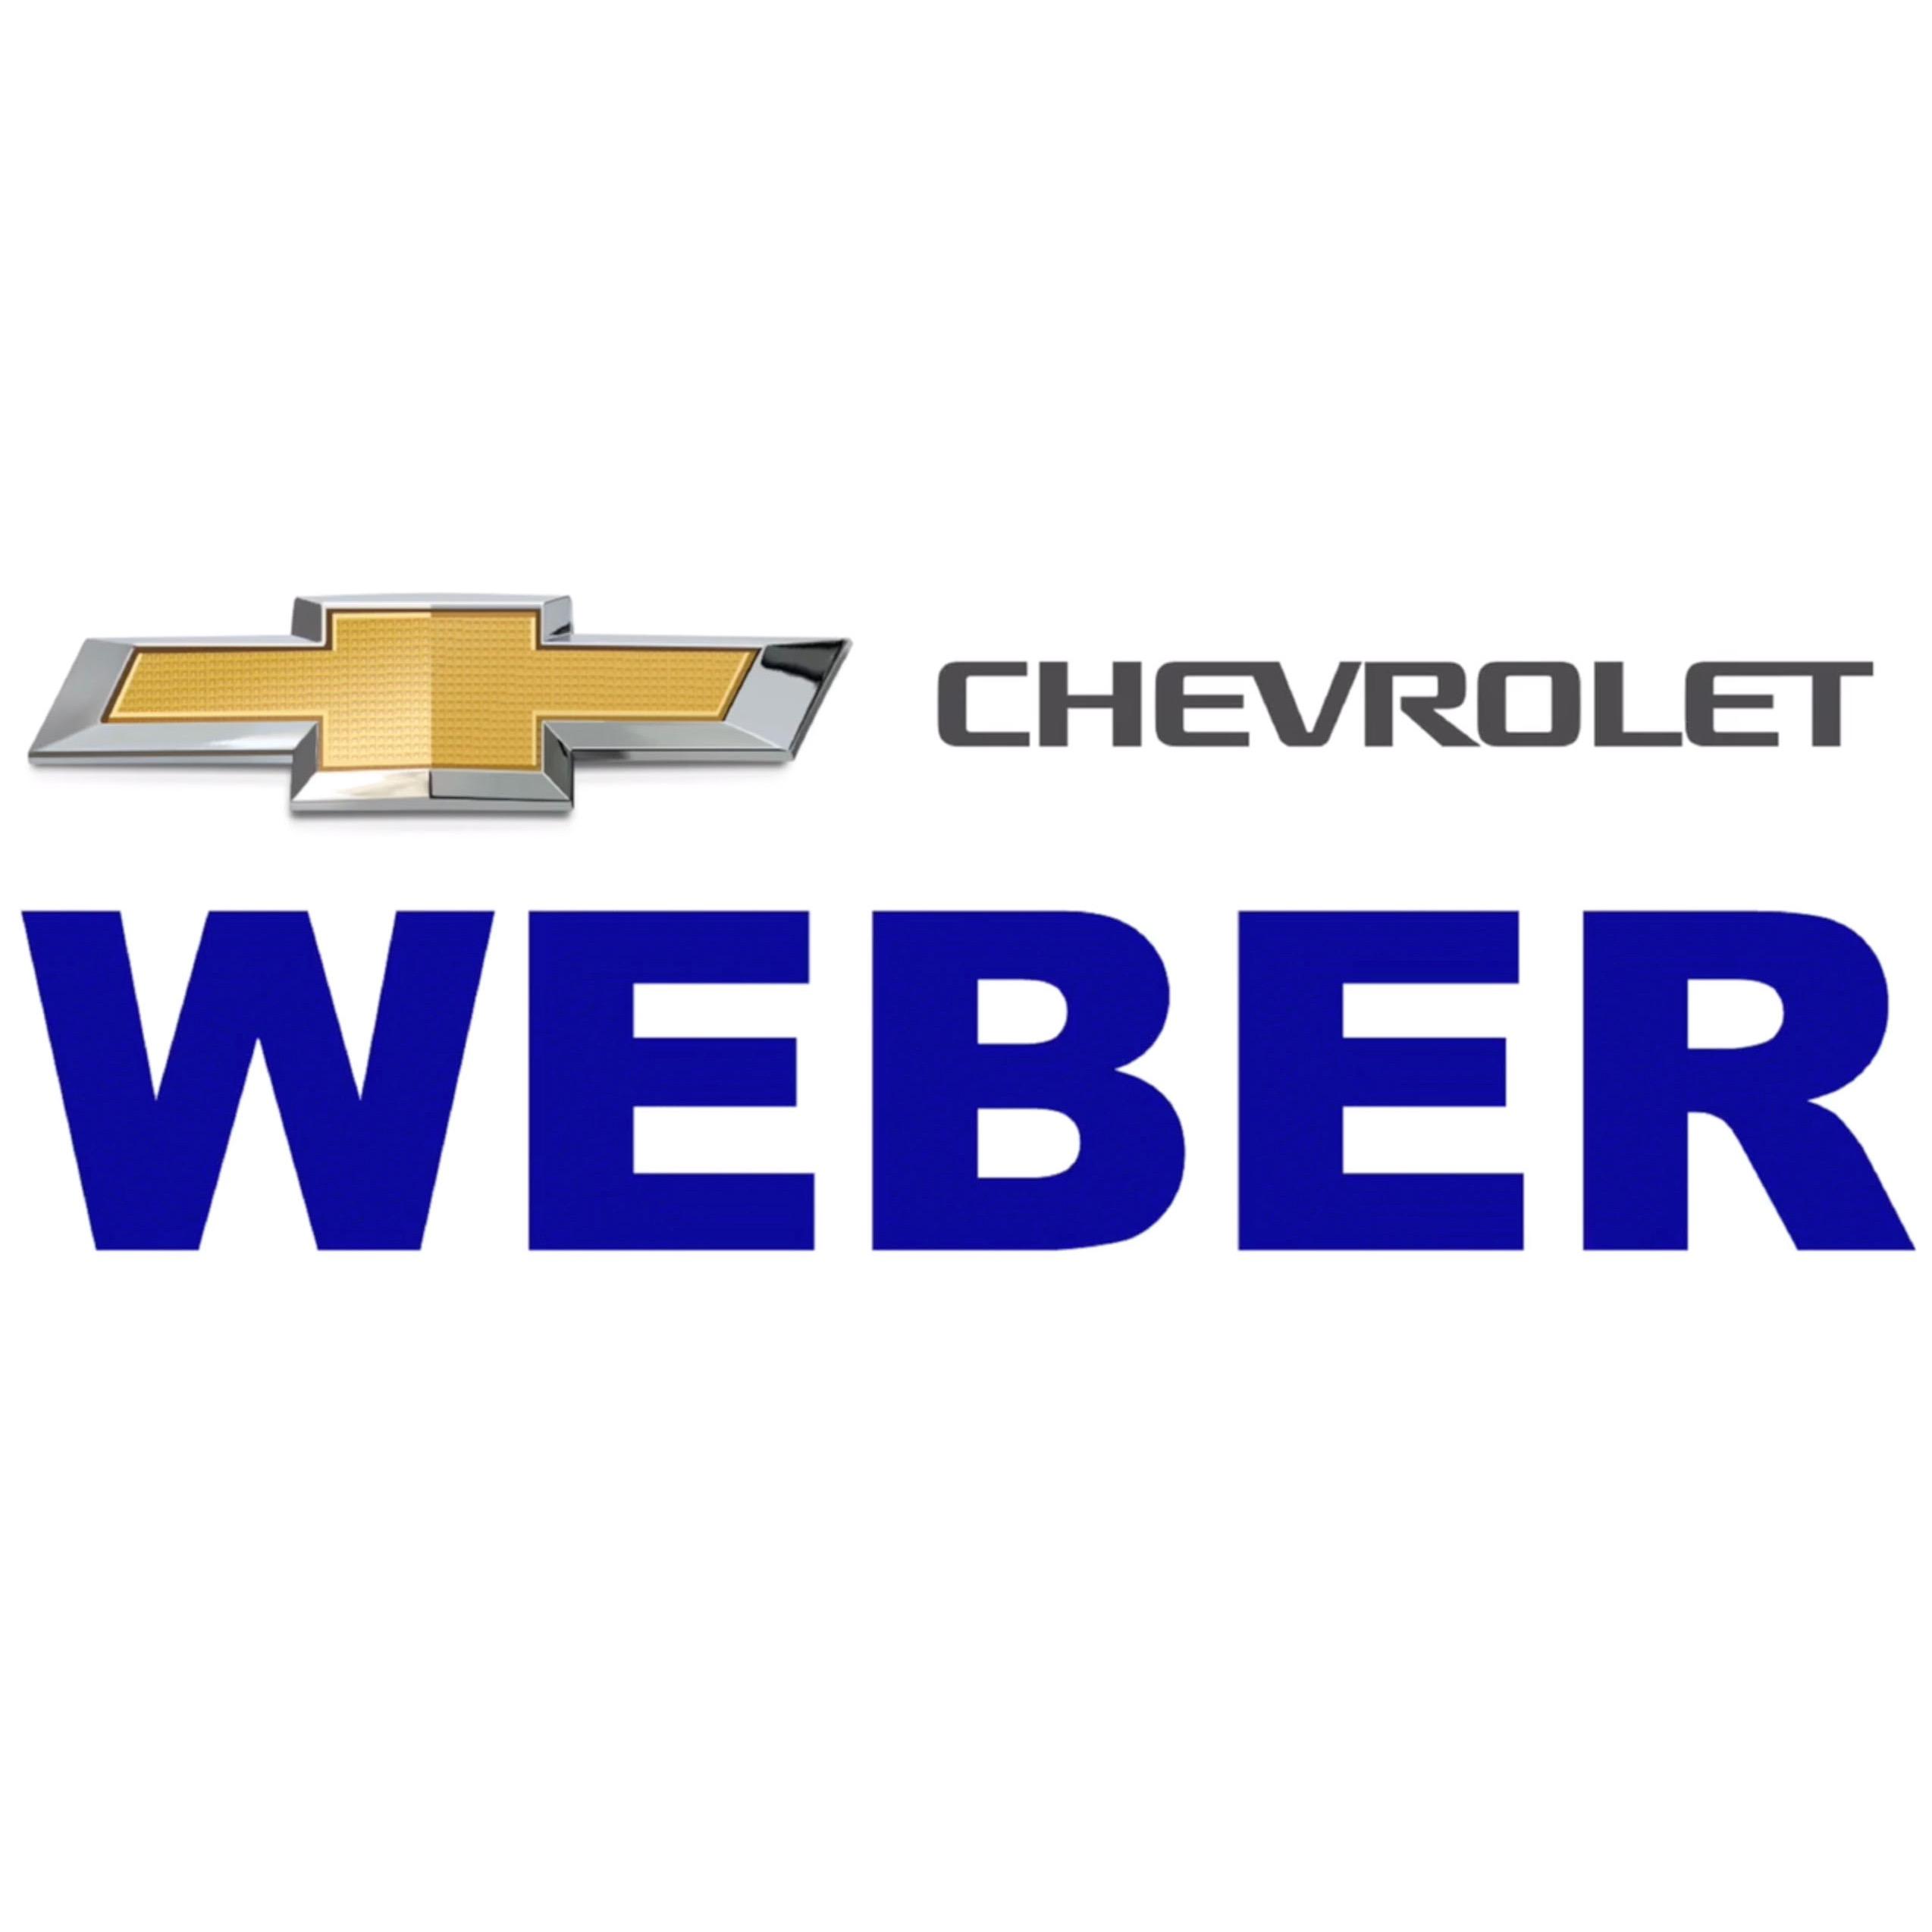 Weber Chevrolet Columbia Columbia (618)281-5111